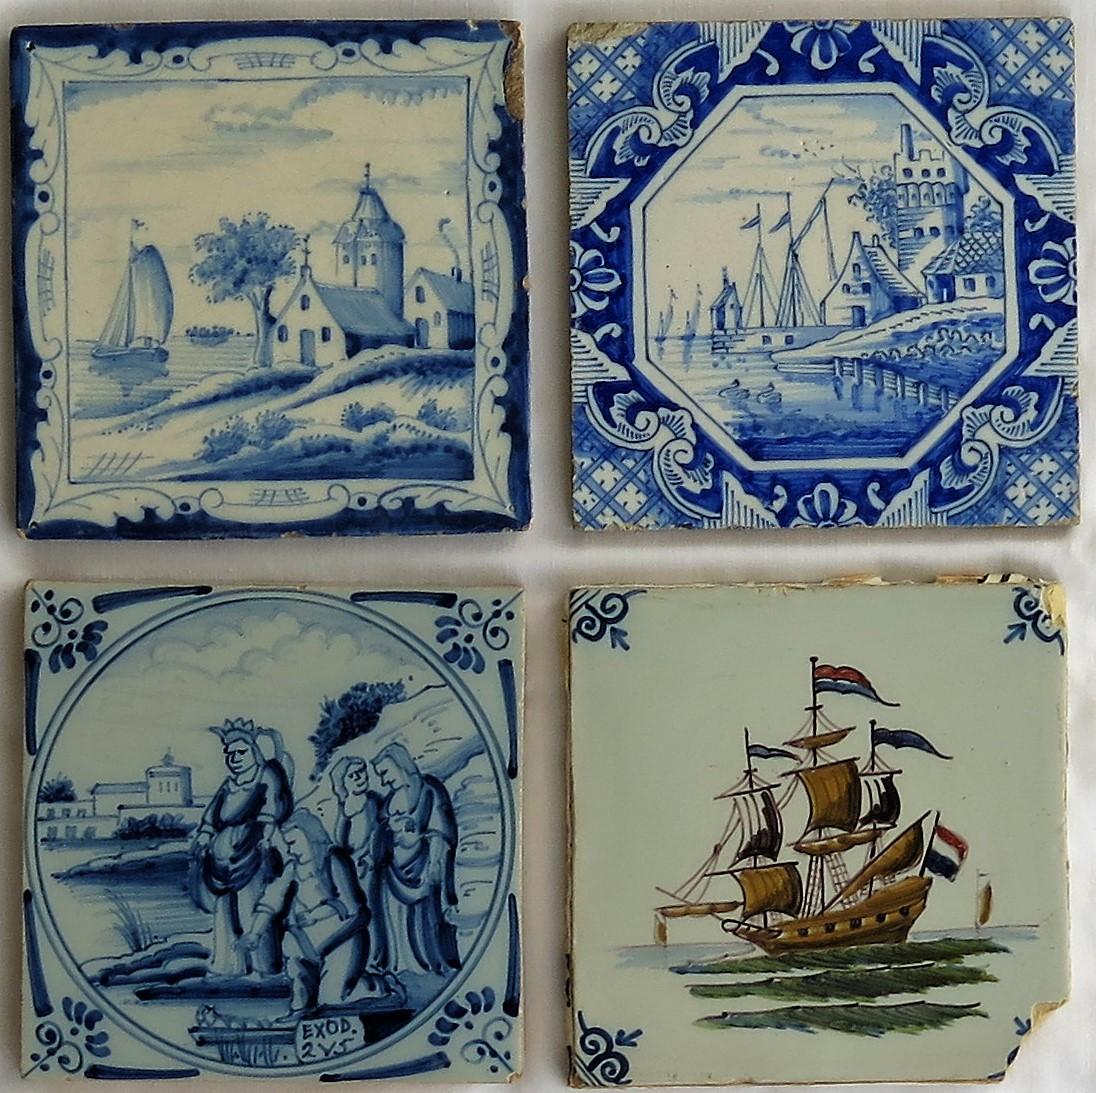 Es handelt sich um vier attraktive, individuelle Delfter Keramik-Wandfliesen aus der zweiten Hälfte des 19. Jahrhunderts.

Alle Fliesen sind nominell 5 Zoll im Quadrat und 5/16 bis 3/8 Zoll dick. 

Kachel 1 - Oben links - Blau und